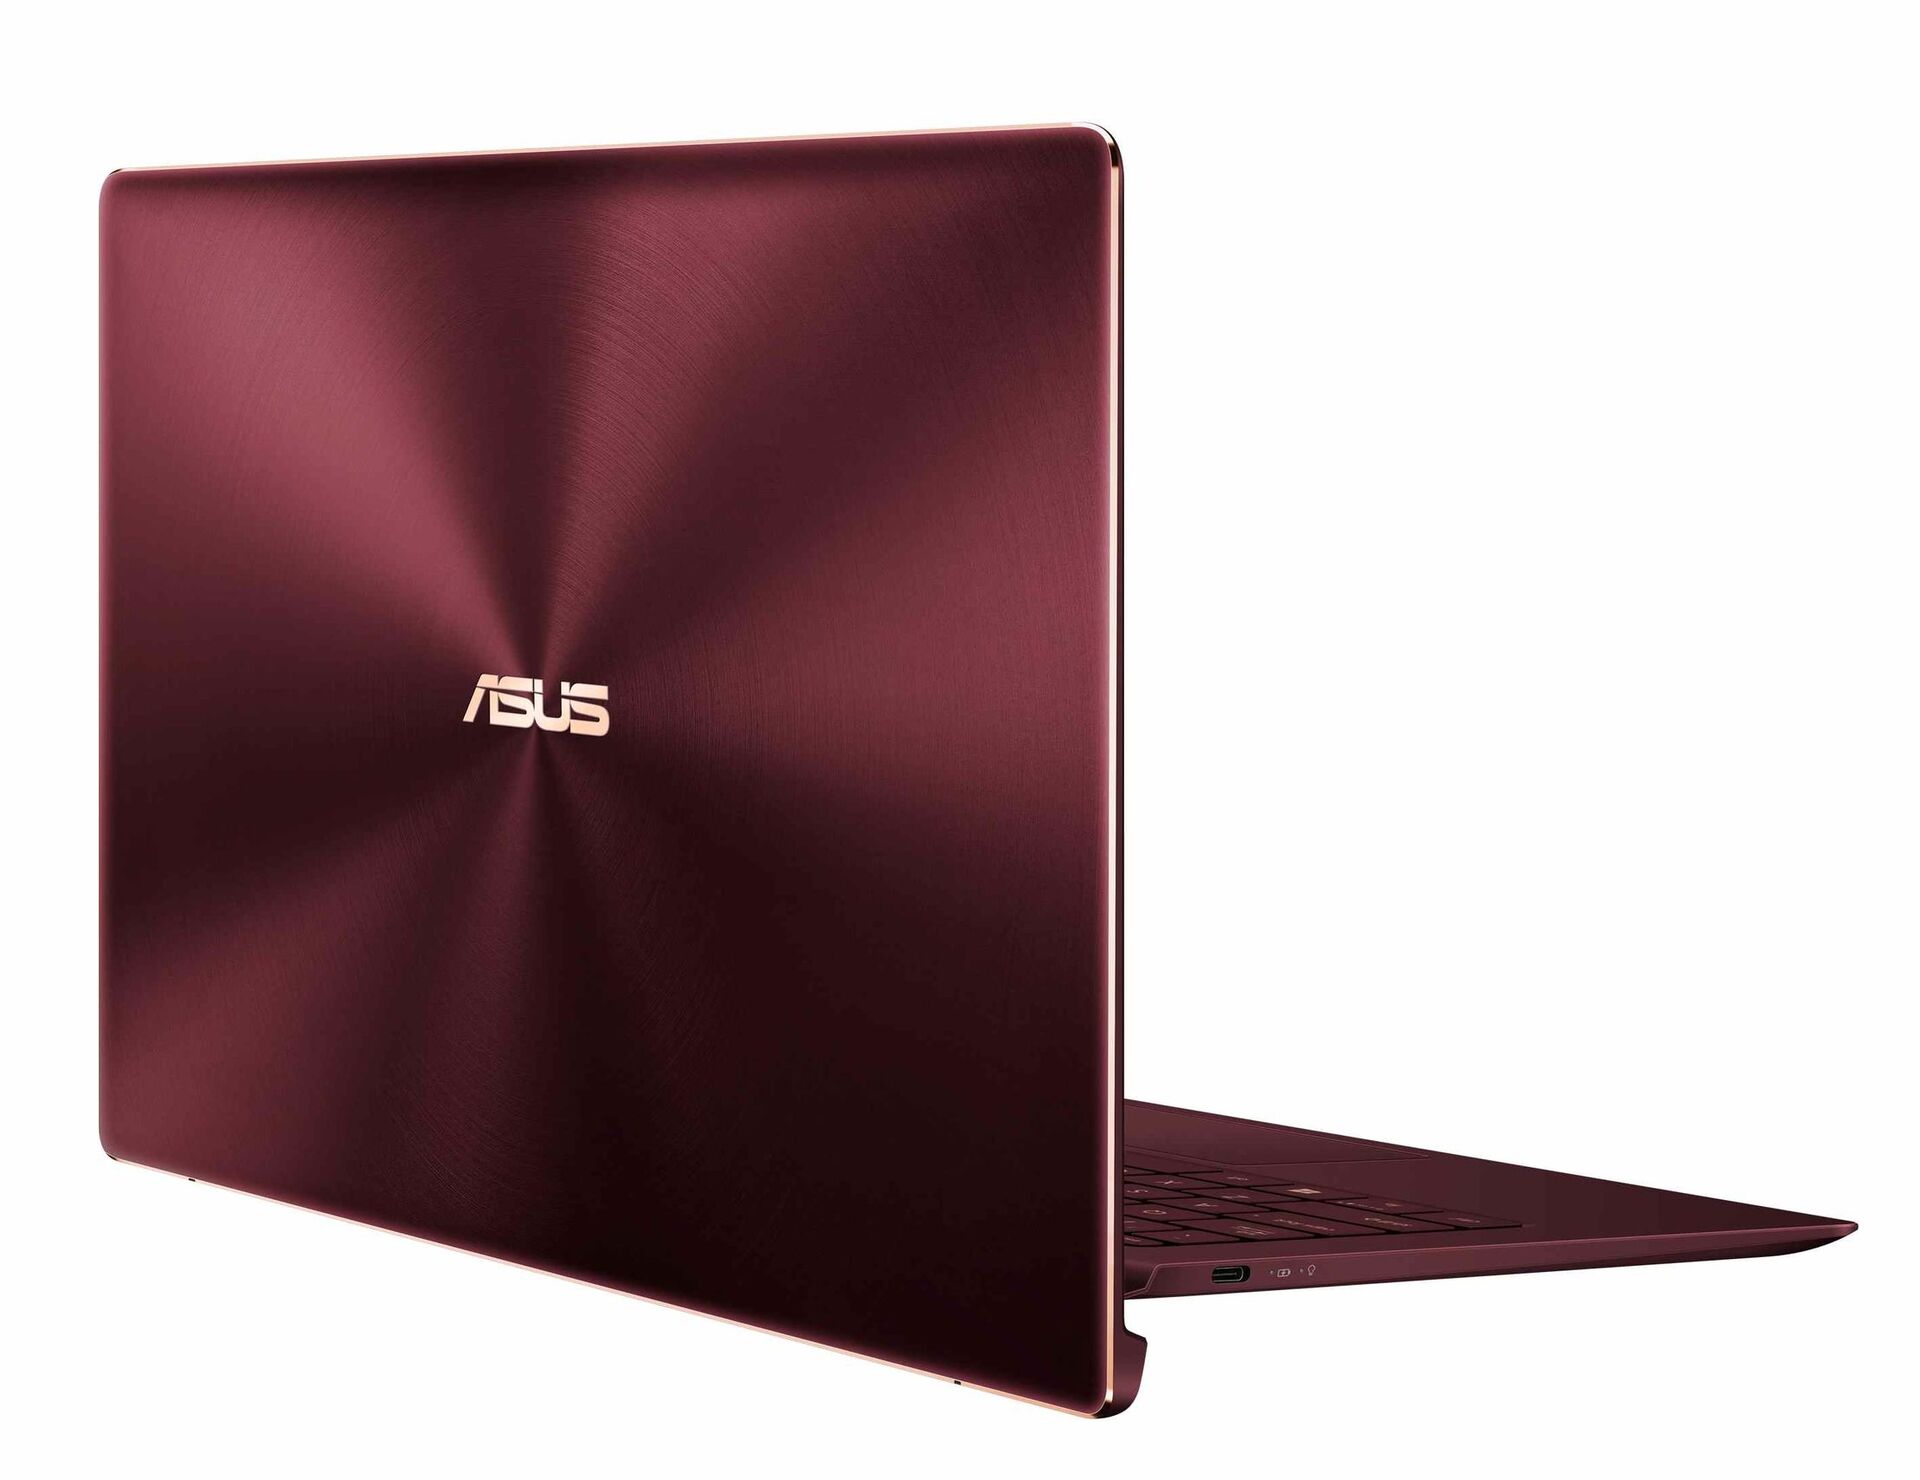 ASUS ZenBook S (2018)